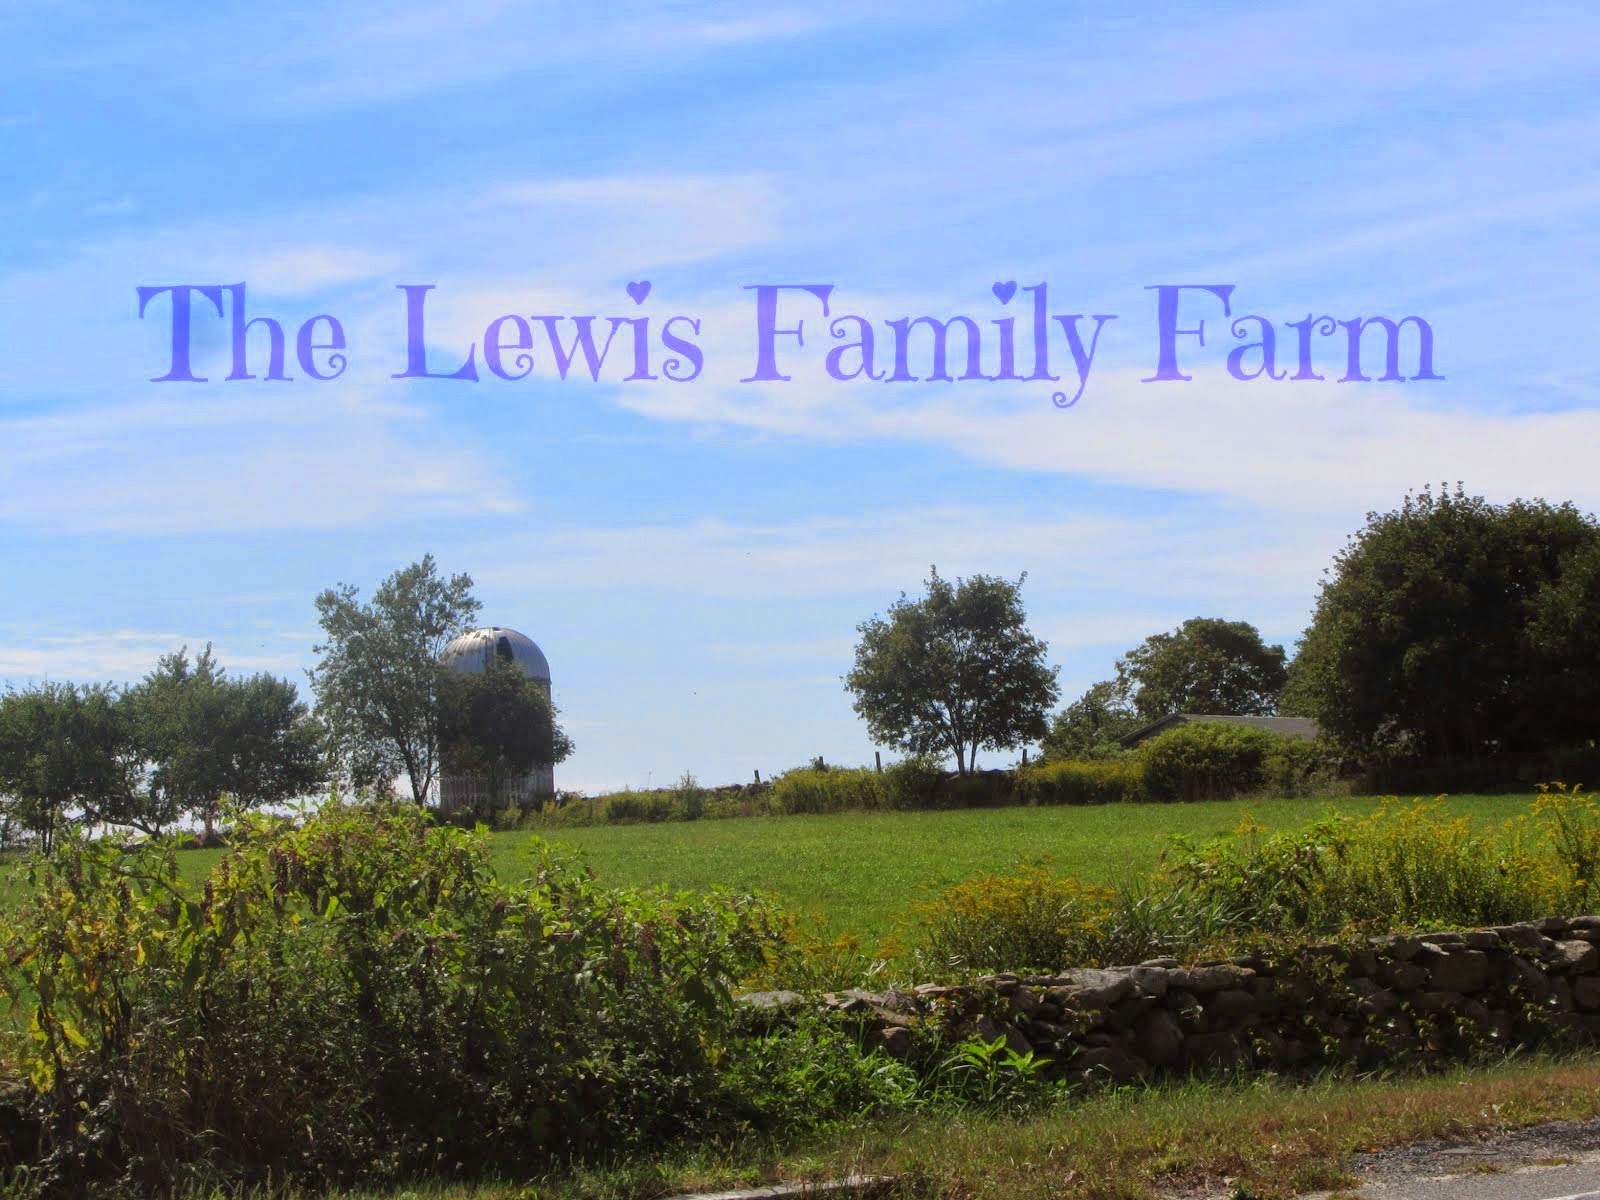 The Lewis Family Farm